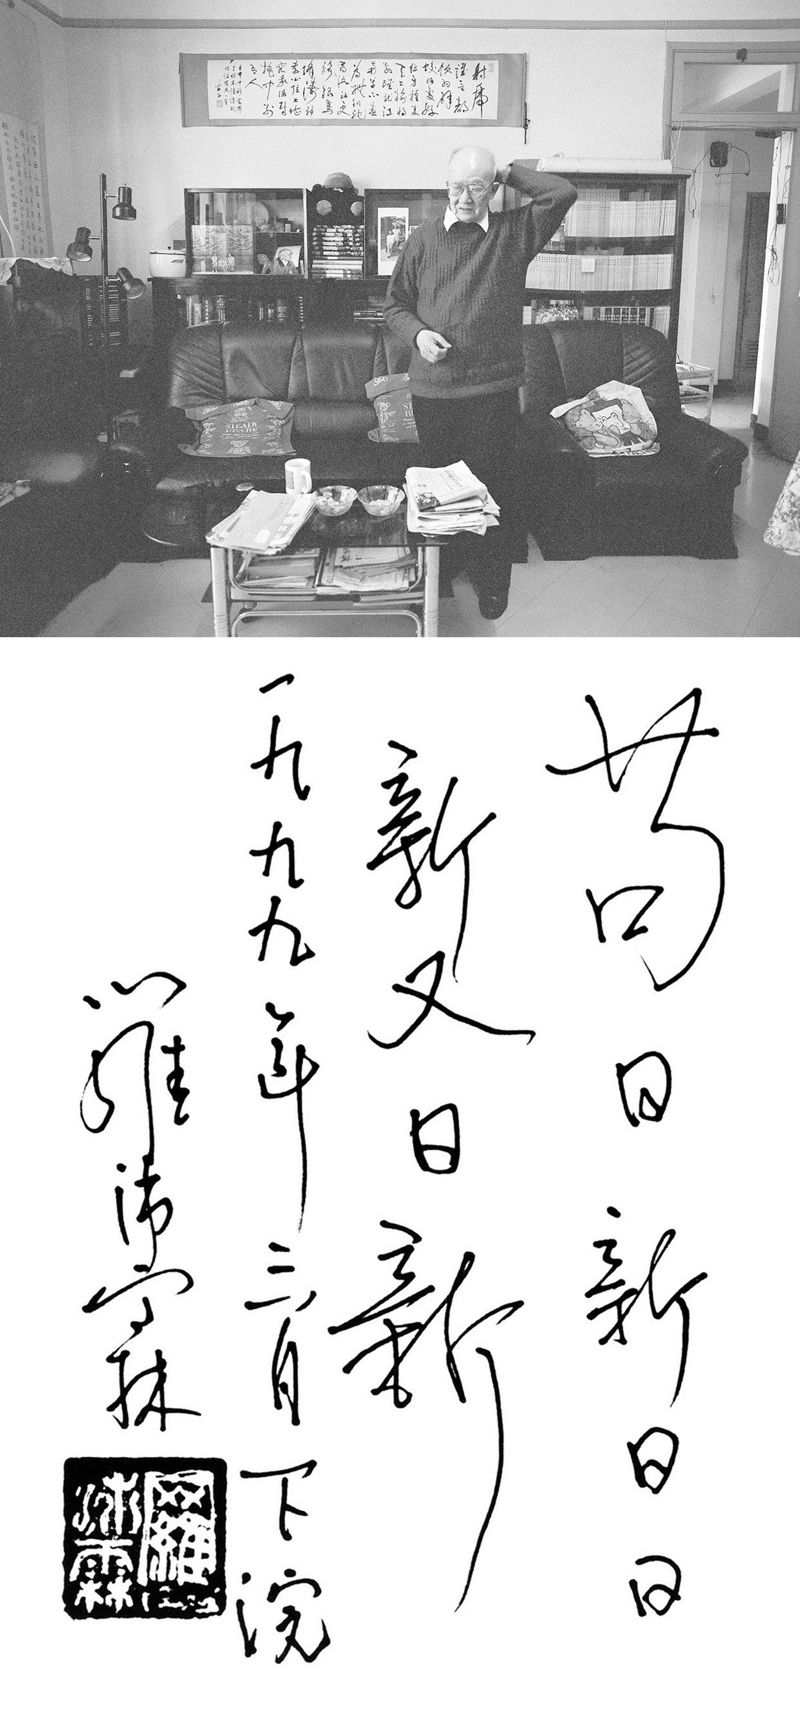 苟日新日日新又日新 1999年3月27日，摄于北京南沙沟寓所 摄影师：侯艺兵.jpg